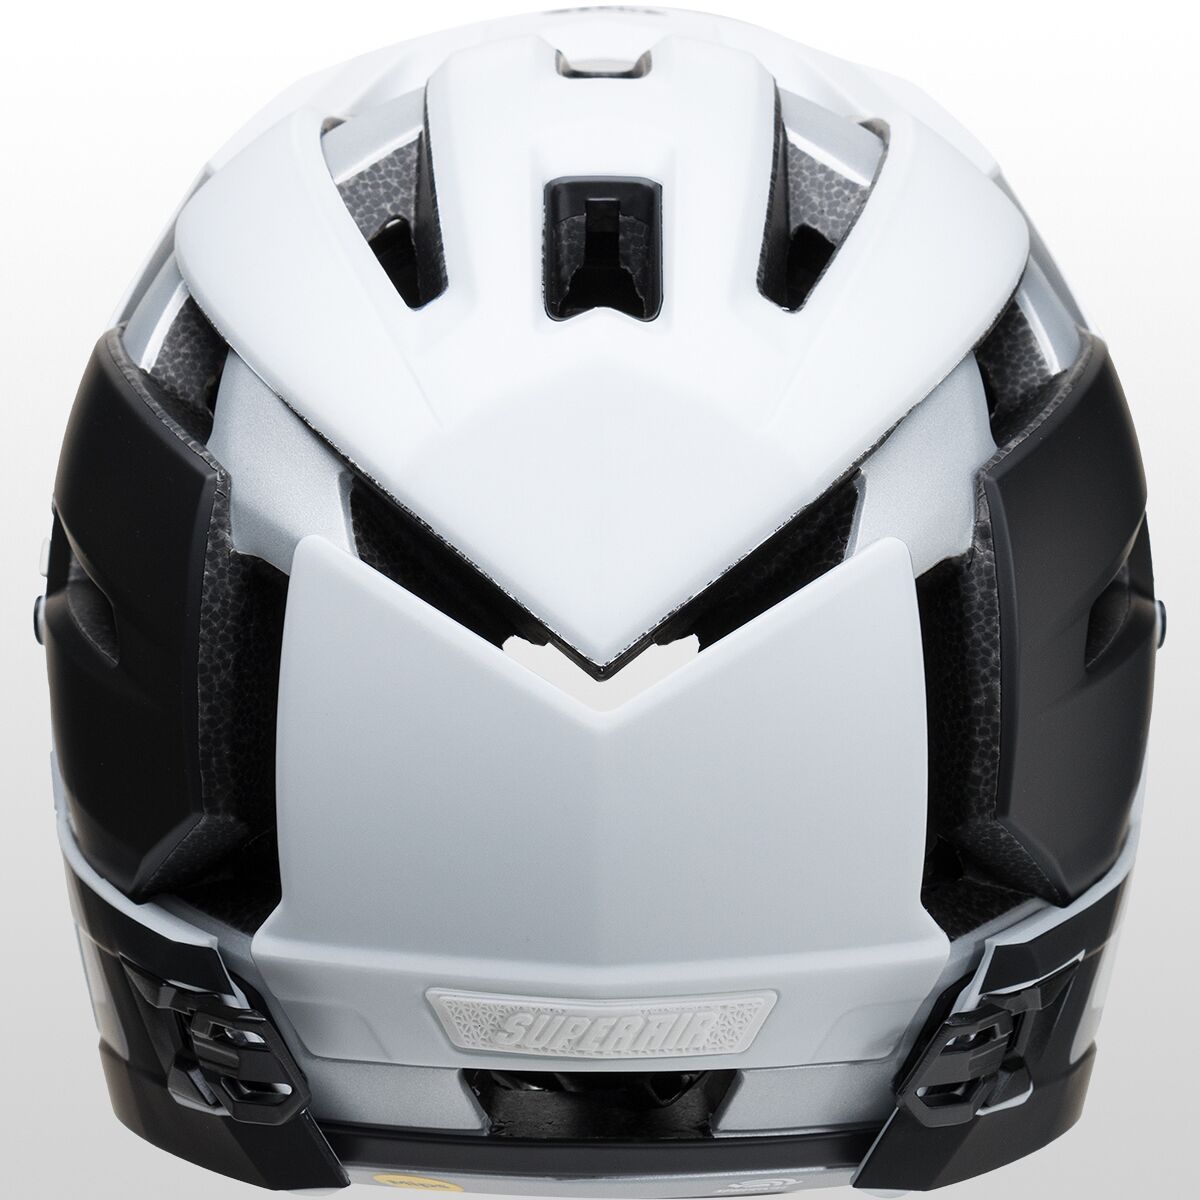  Bell Super Air R MIPS Helmet - Bike